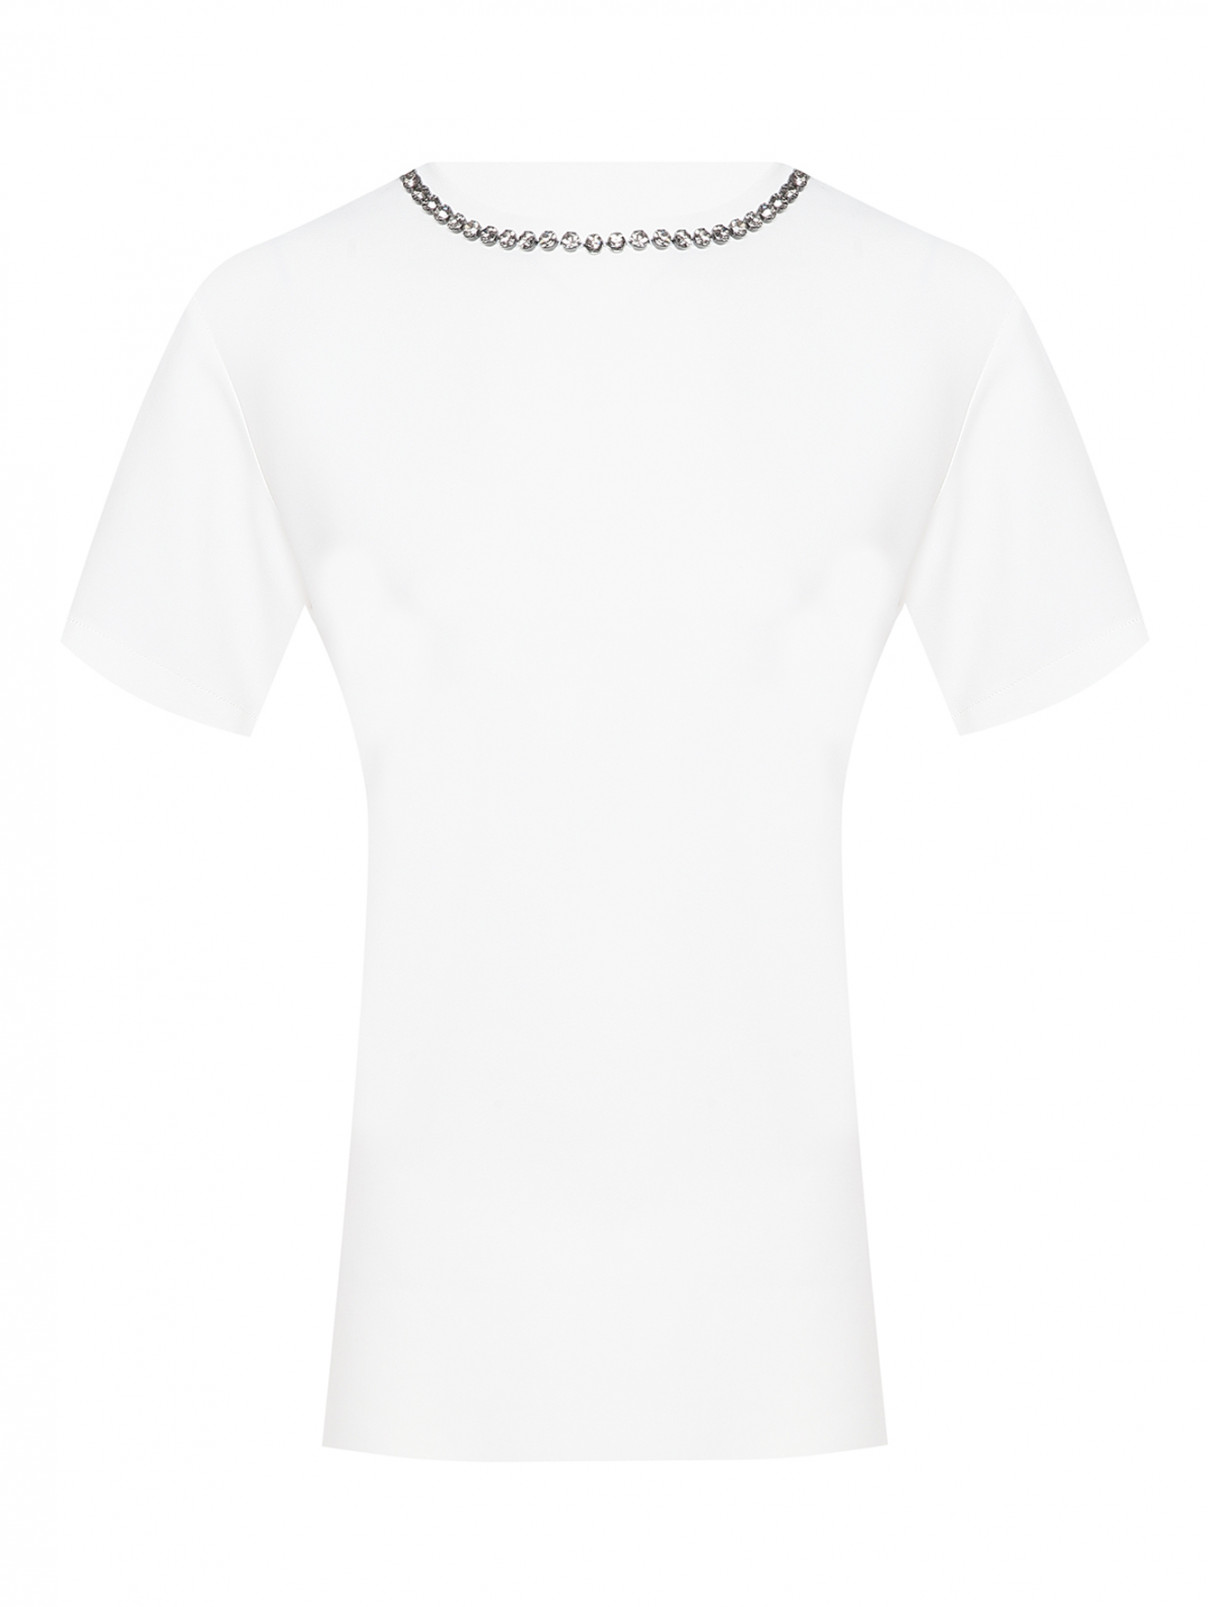 Блуза с коротким рукавом, декорированная кристаллами N21  –  Общий вид  – Цвет:  Белый